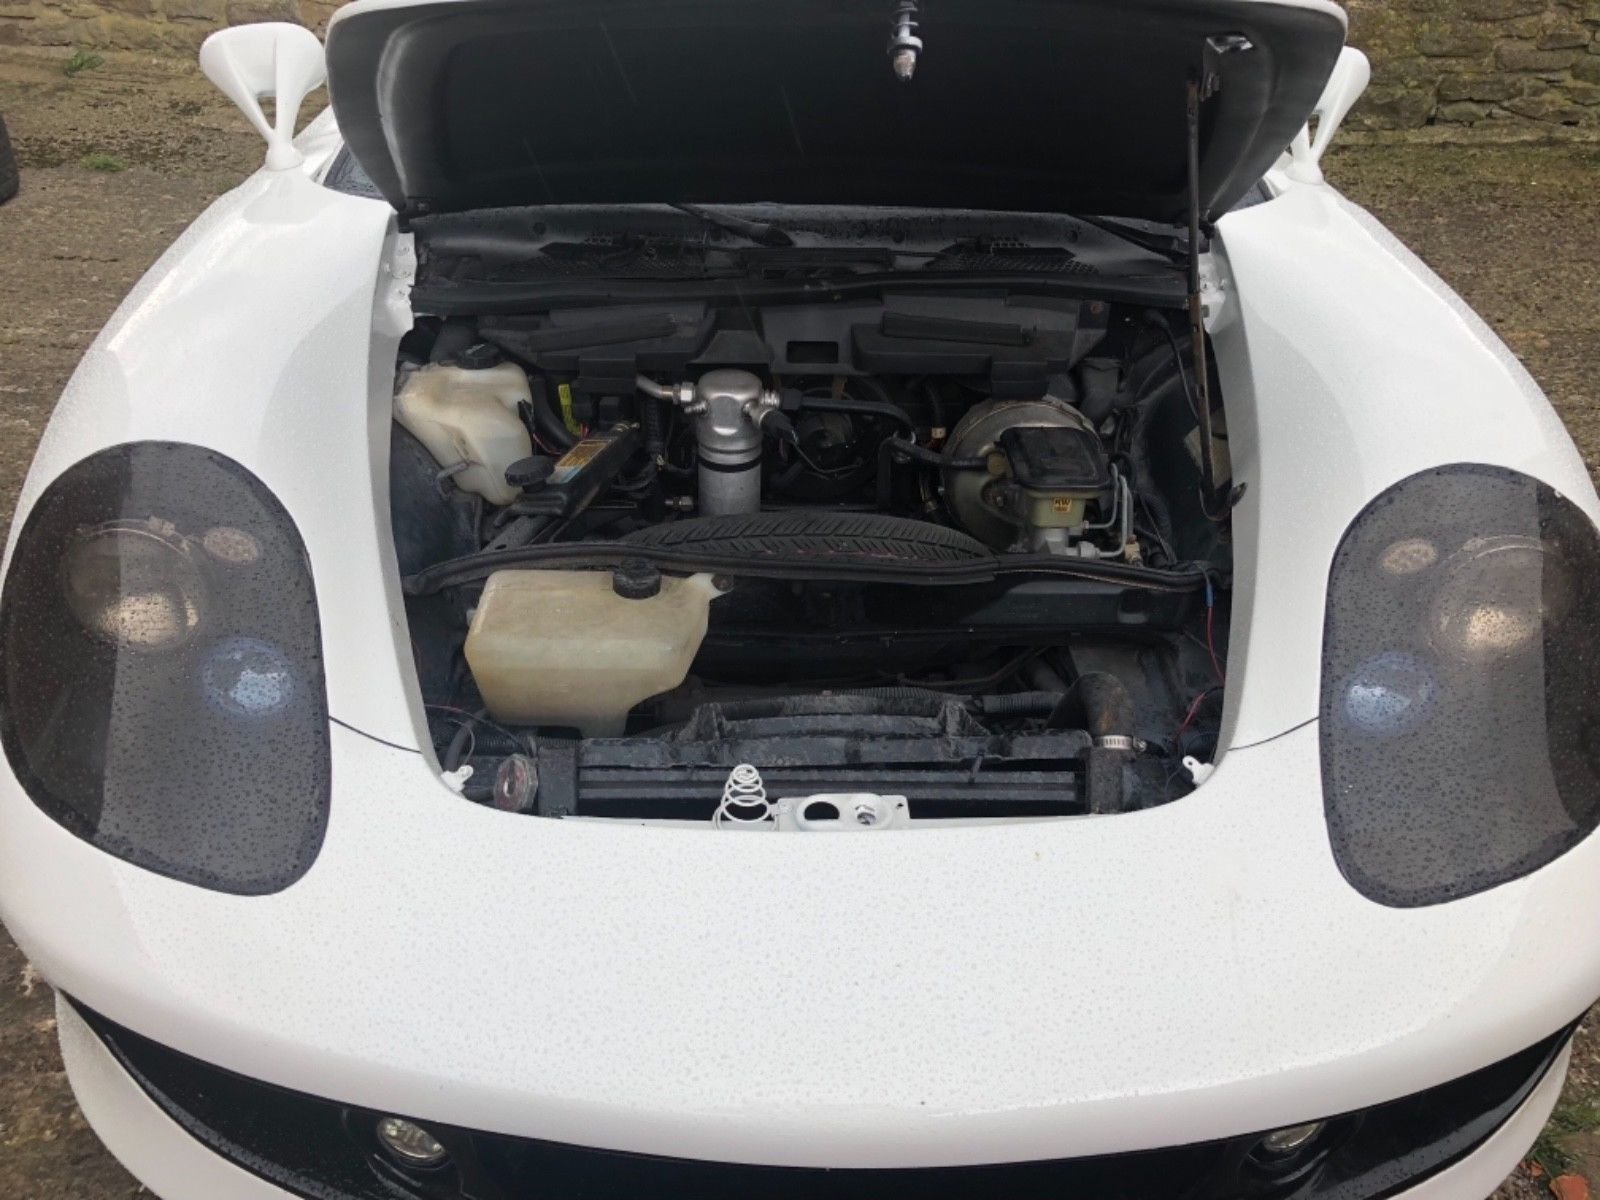 Nepříliš zdařilá replika Porsche Carrera GT, postavená na základech Pontiacu Fierro, baví internet